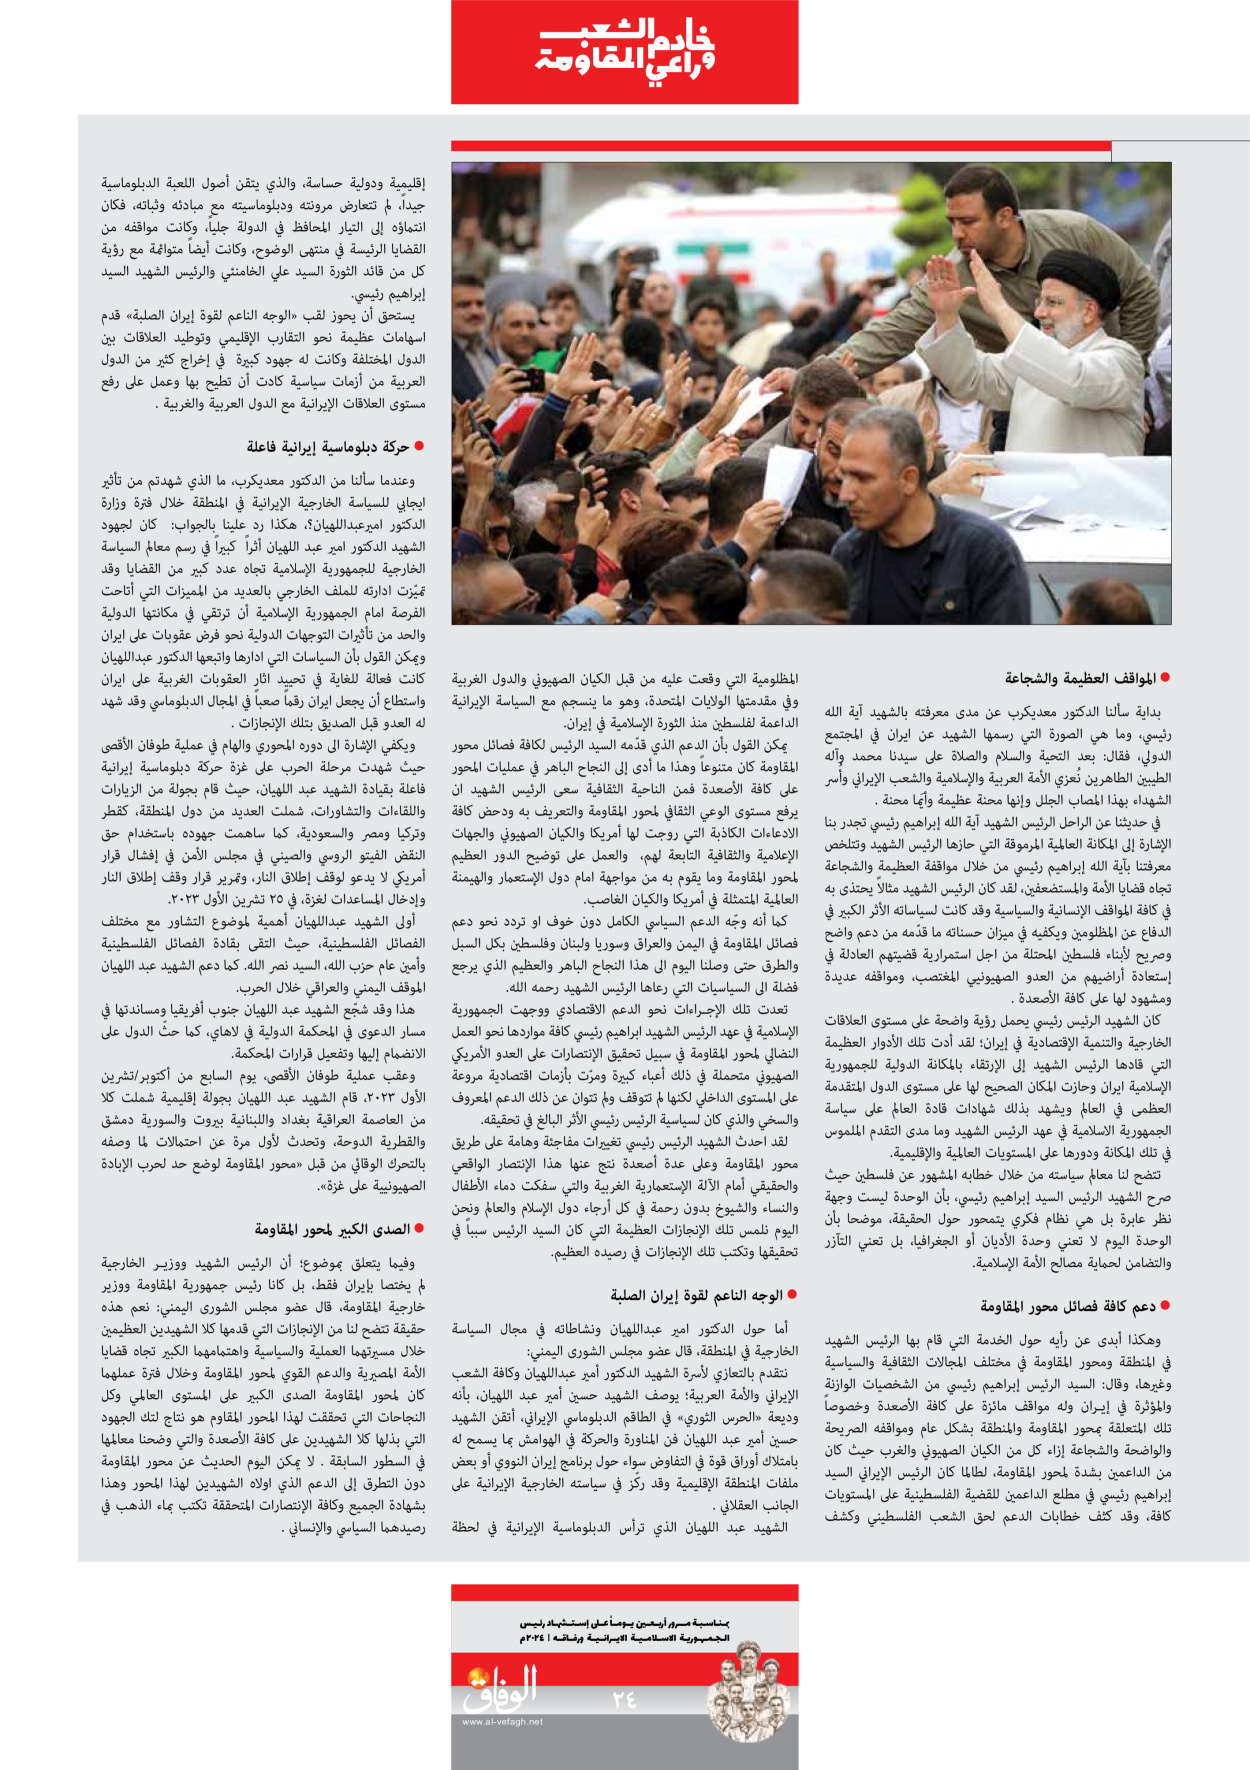 صحیفة ایران الدولیة الوفاق - ملحق ویژه نامه چهلم شهید رییسی - ٢٩ يونيو ٢٠٢٤ - الصفحة ۲٤